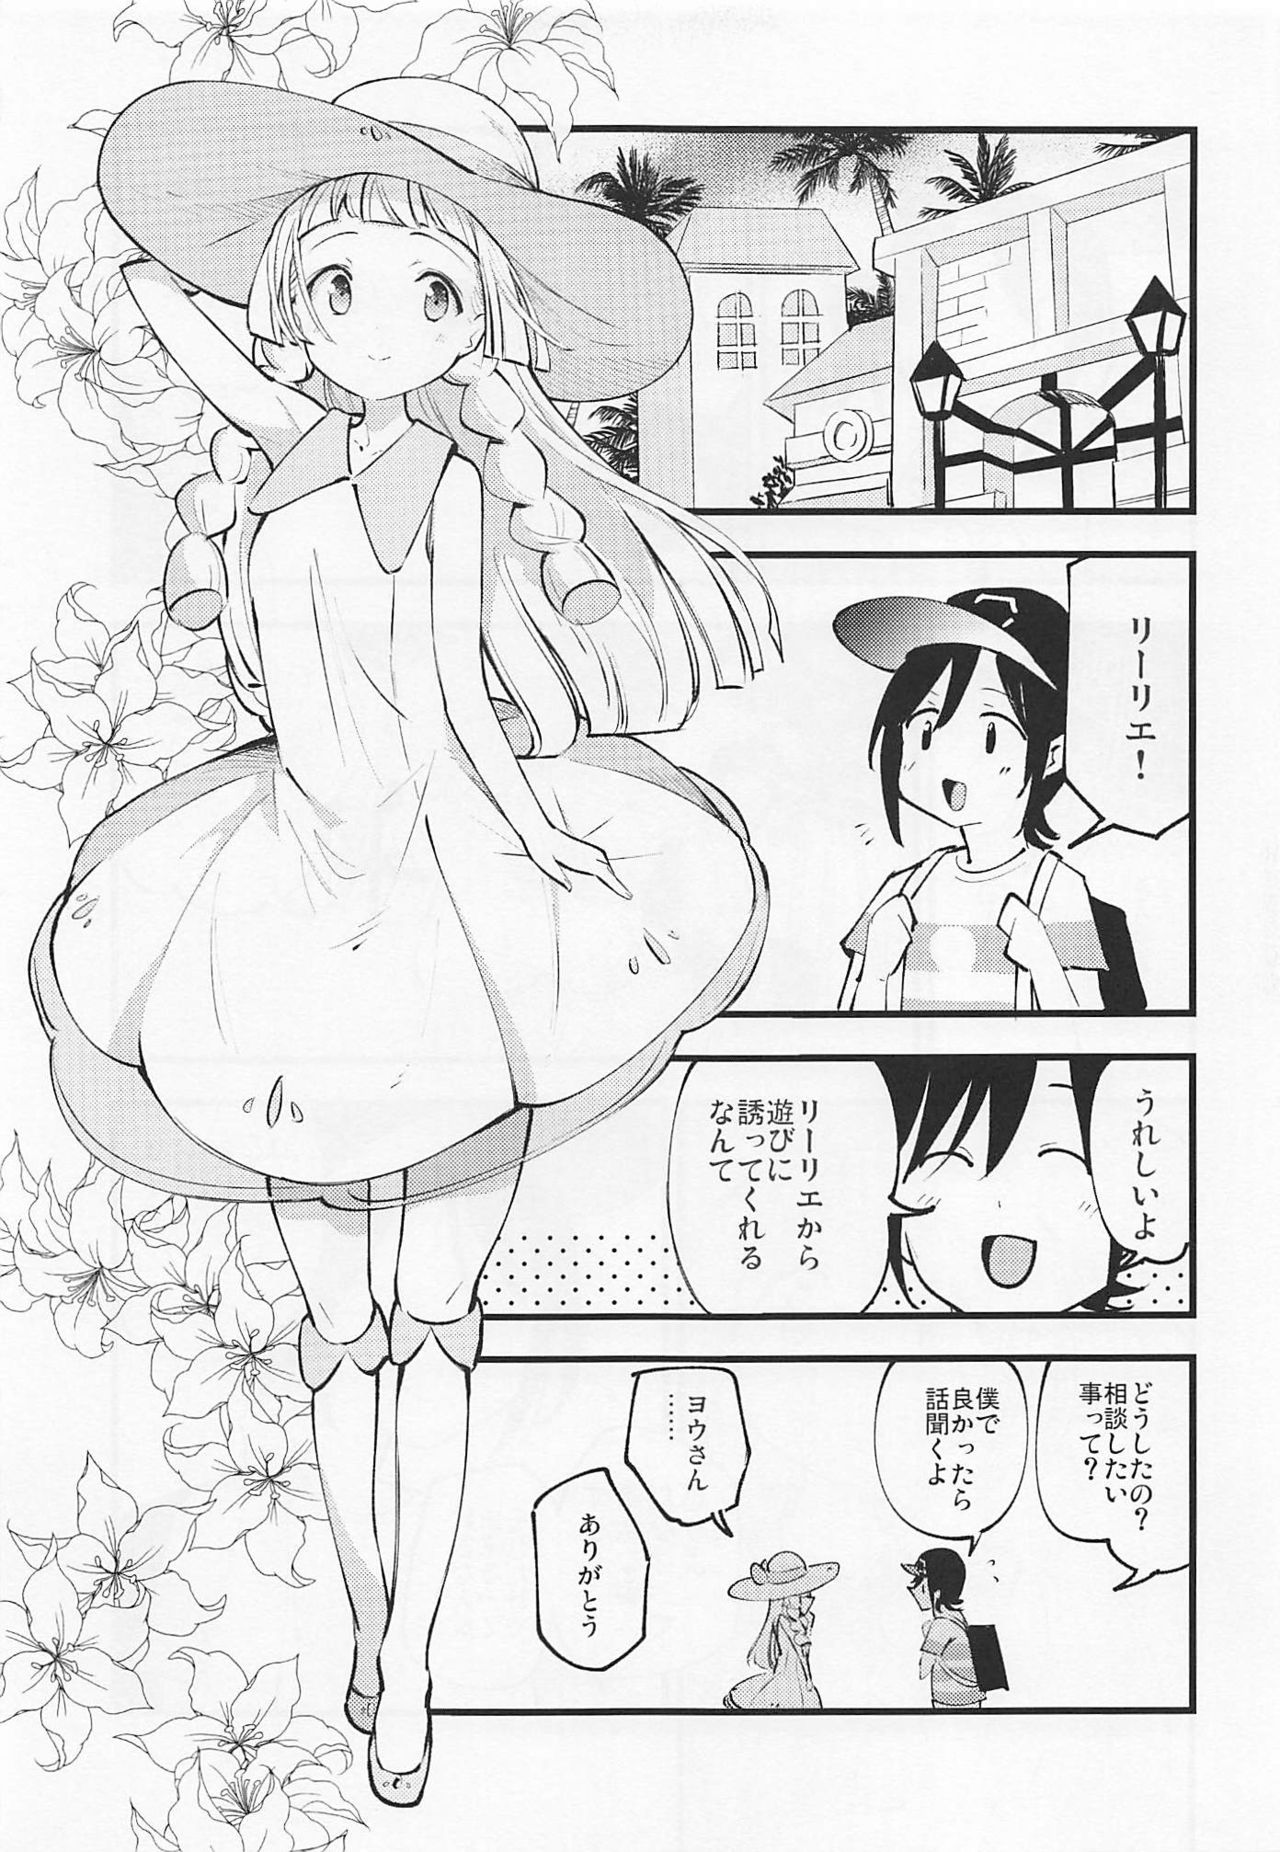 (C97) [Shironegiya (miya9)] Hakase no Yoru no Joshu. 3 (Pokémon Sun and Moon) page 6 full